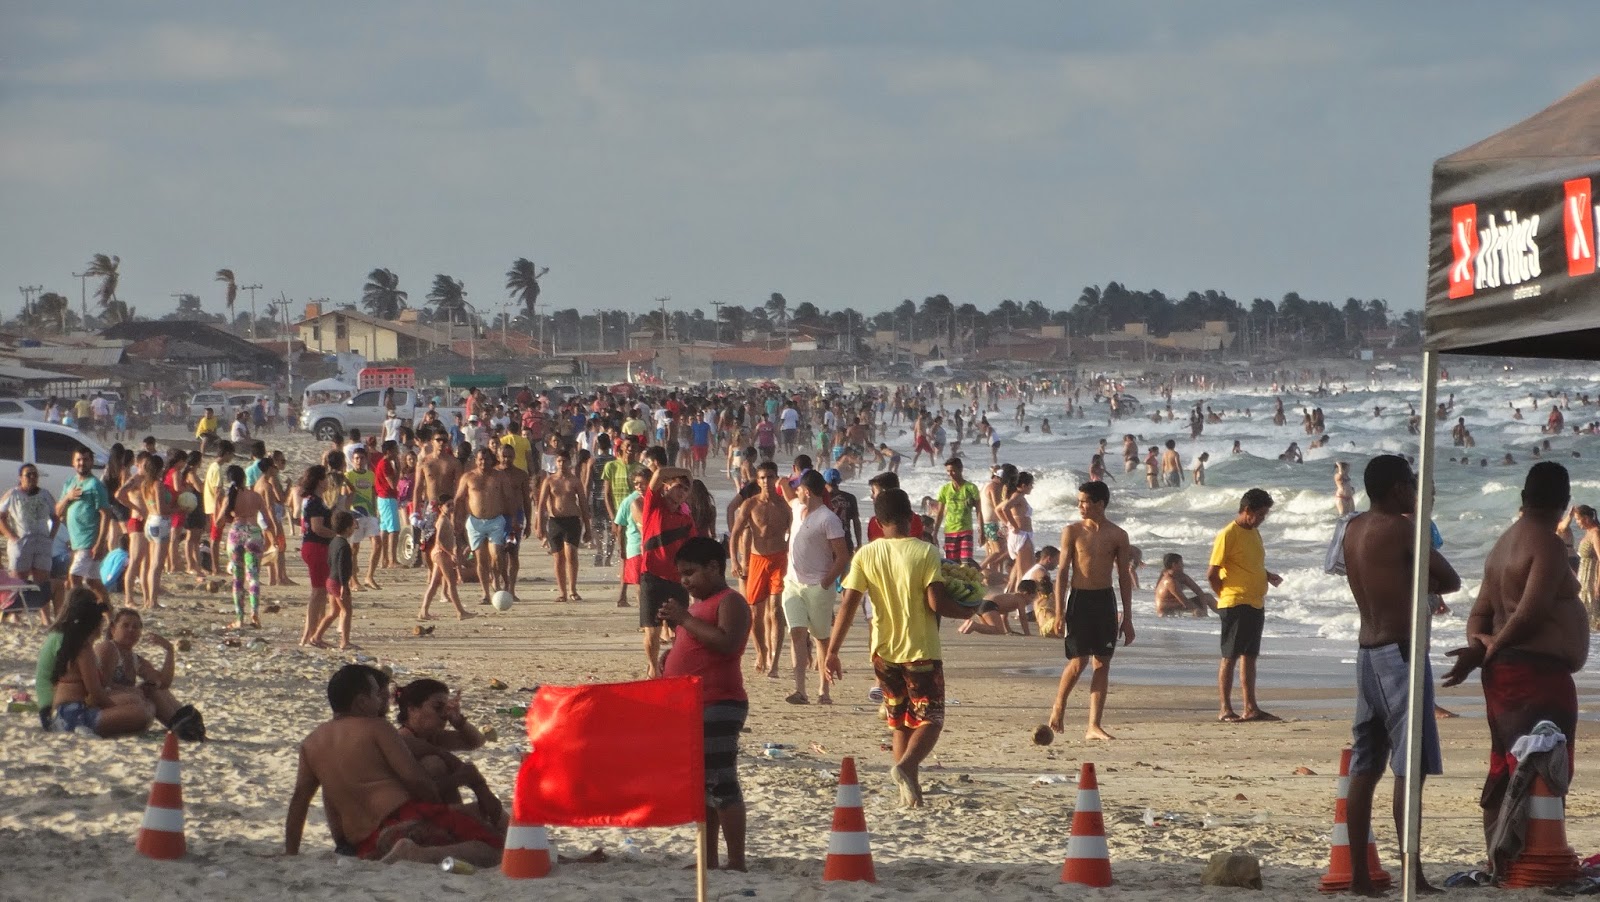 Veraneio aquece economia local no período de dezembro até o Carnaval (Foto: Reprodução/Blog Tovendotibau) 